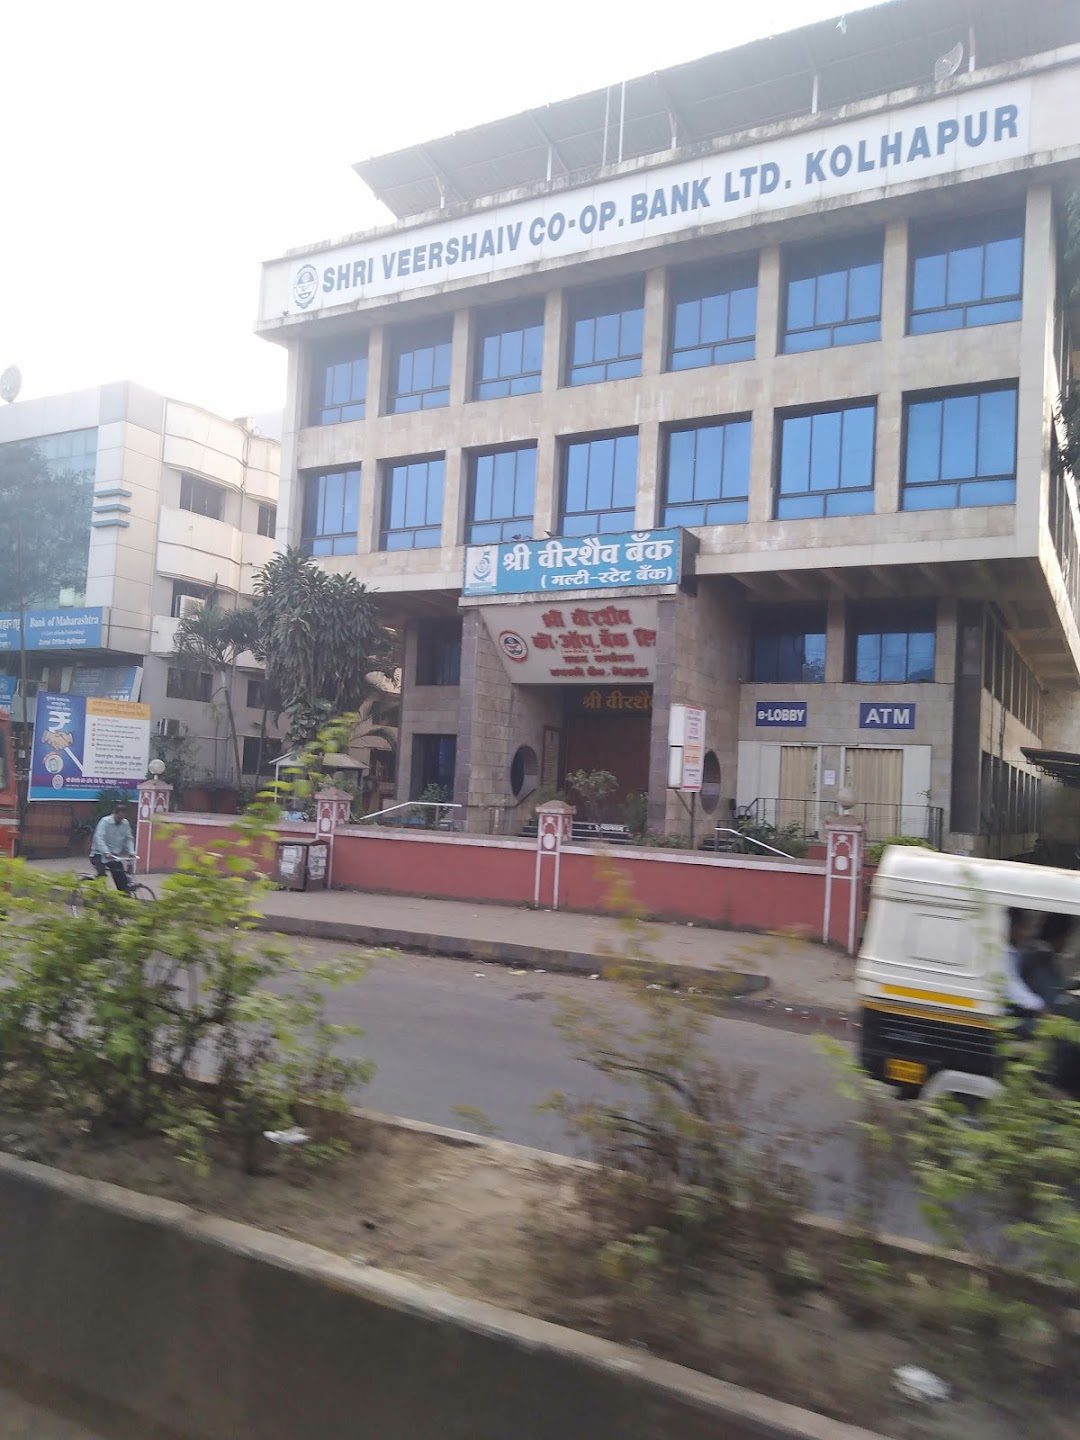 Shri Veershaiv Cooperative Bank Ltd Head office